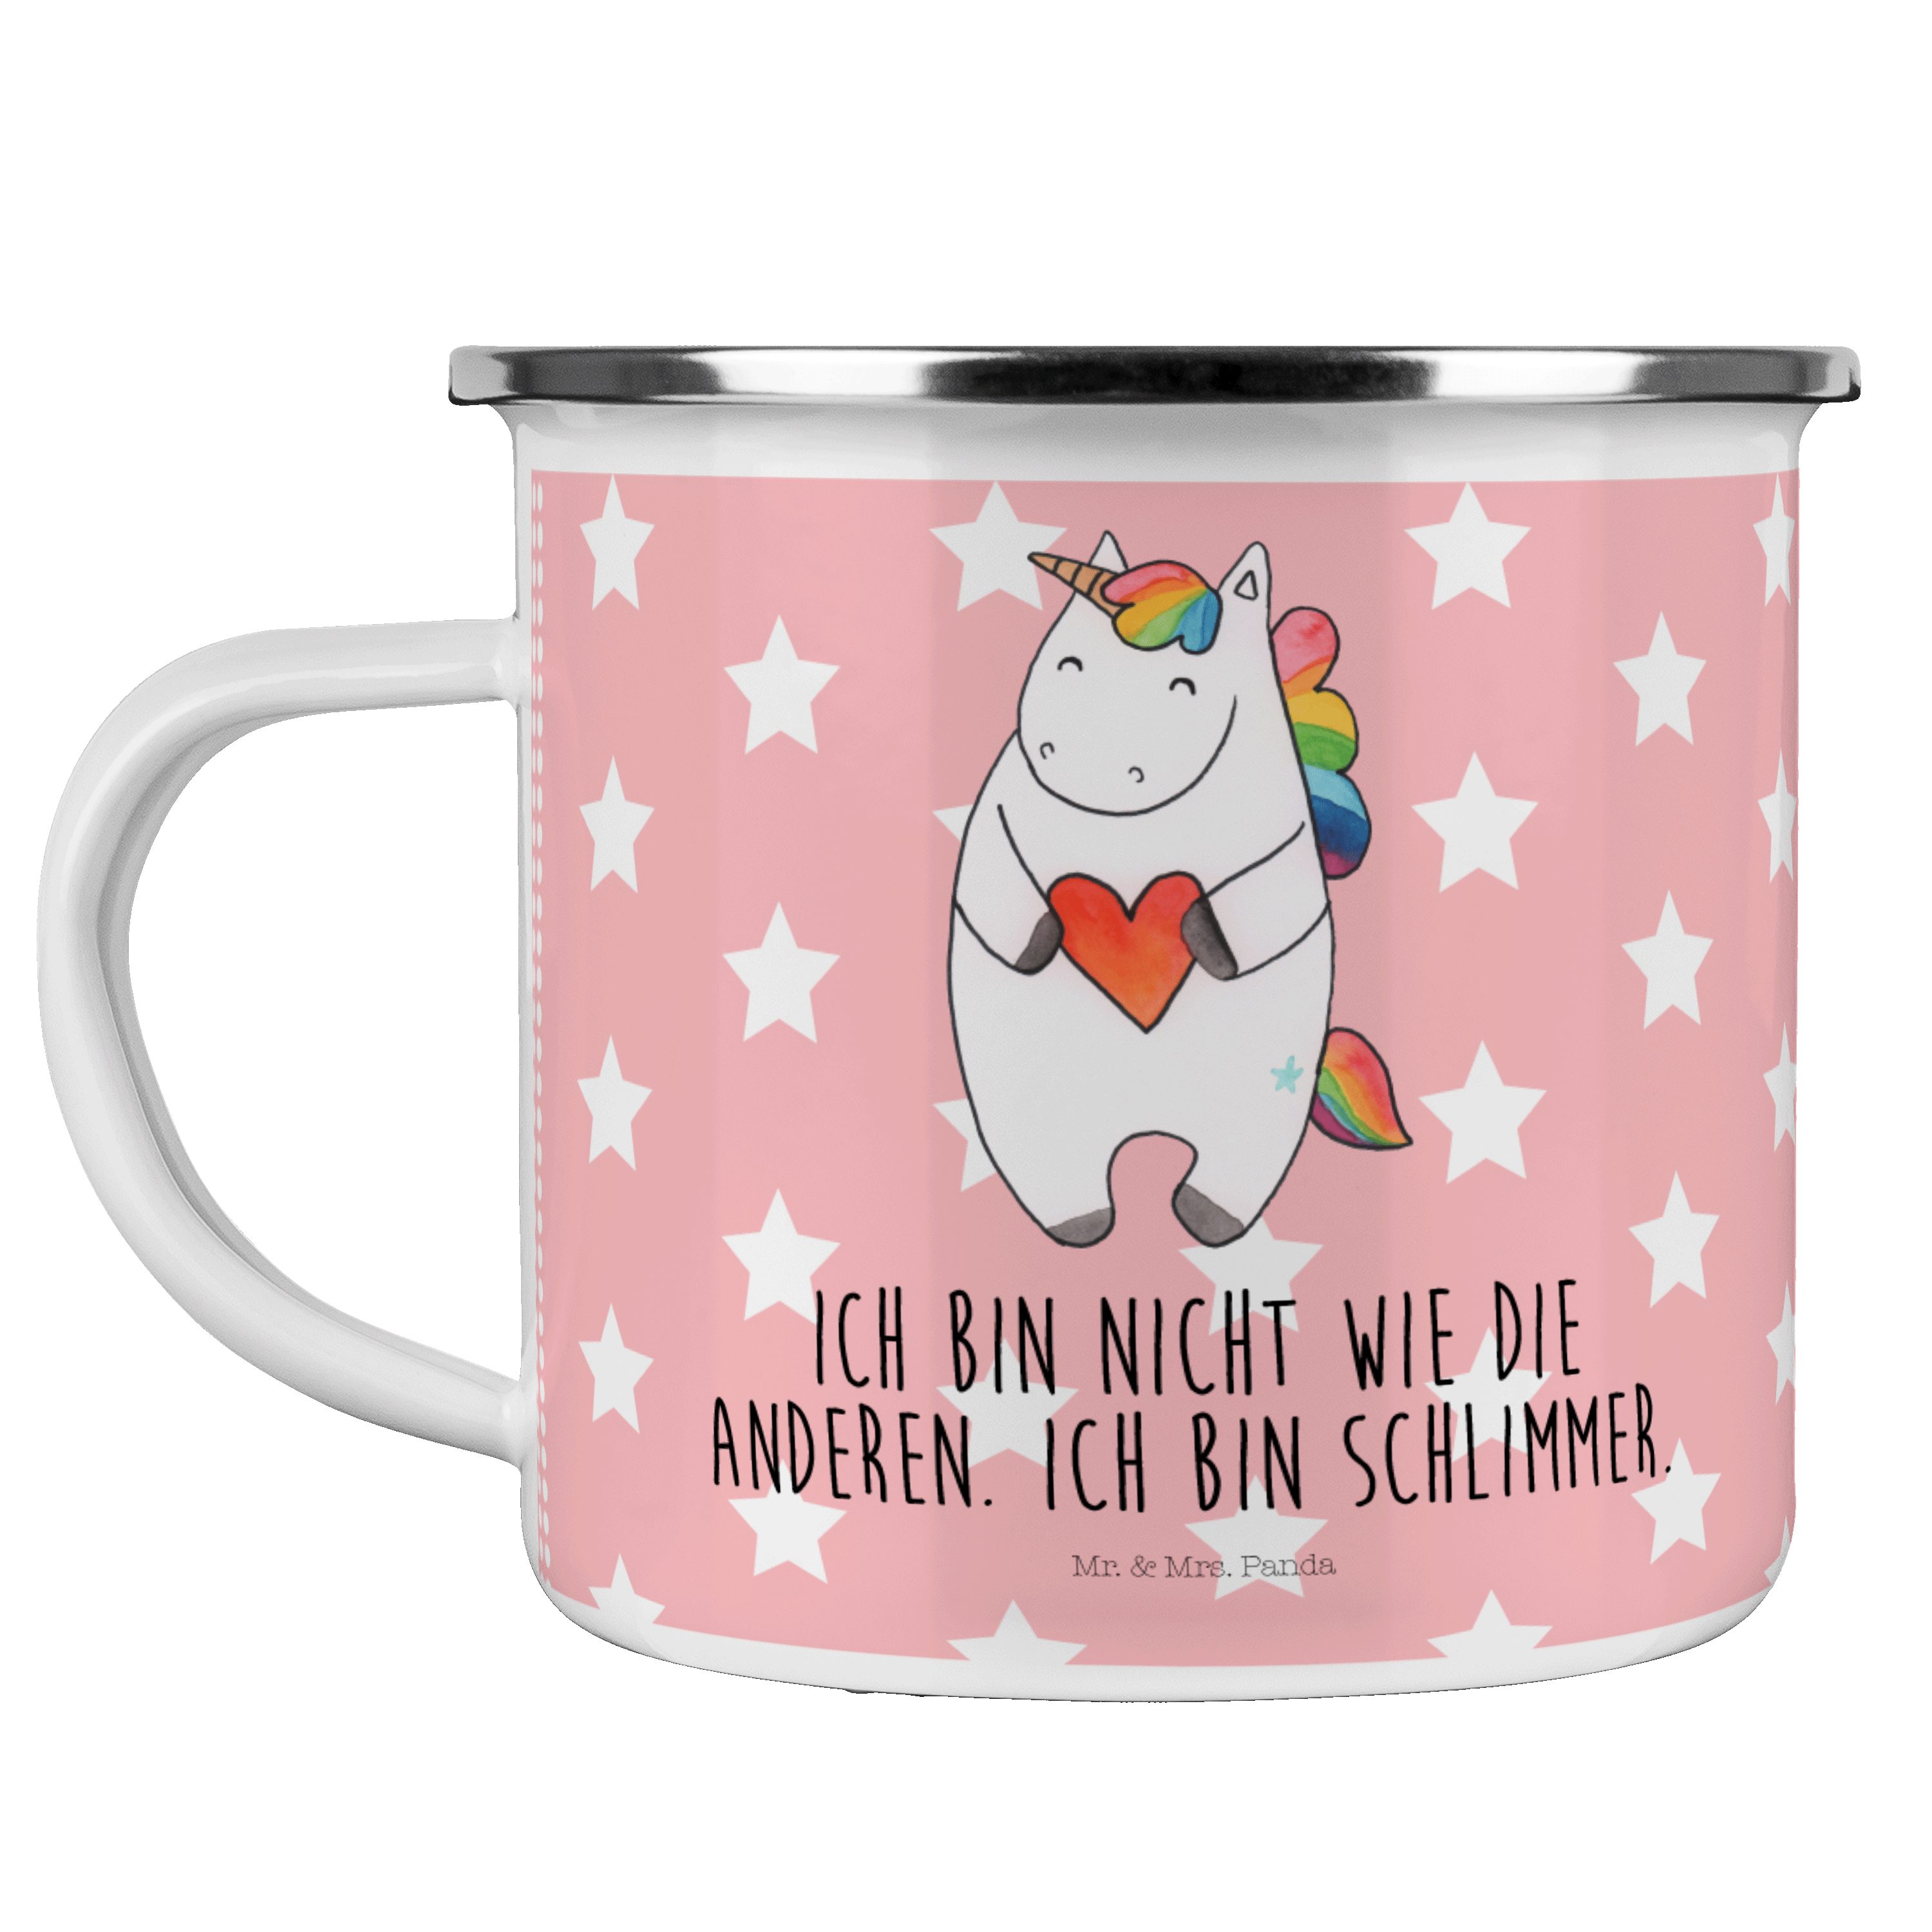 Mr. & Mrs. Panda Becher Einhorn Herz - Rot Pastell - Geschenk, witzig, schlimm, bunt, Pegasus, Emaille